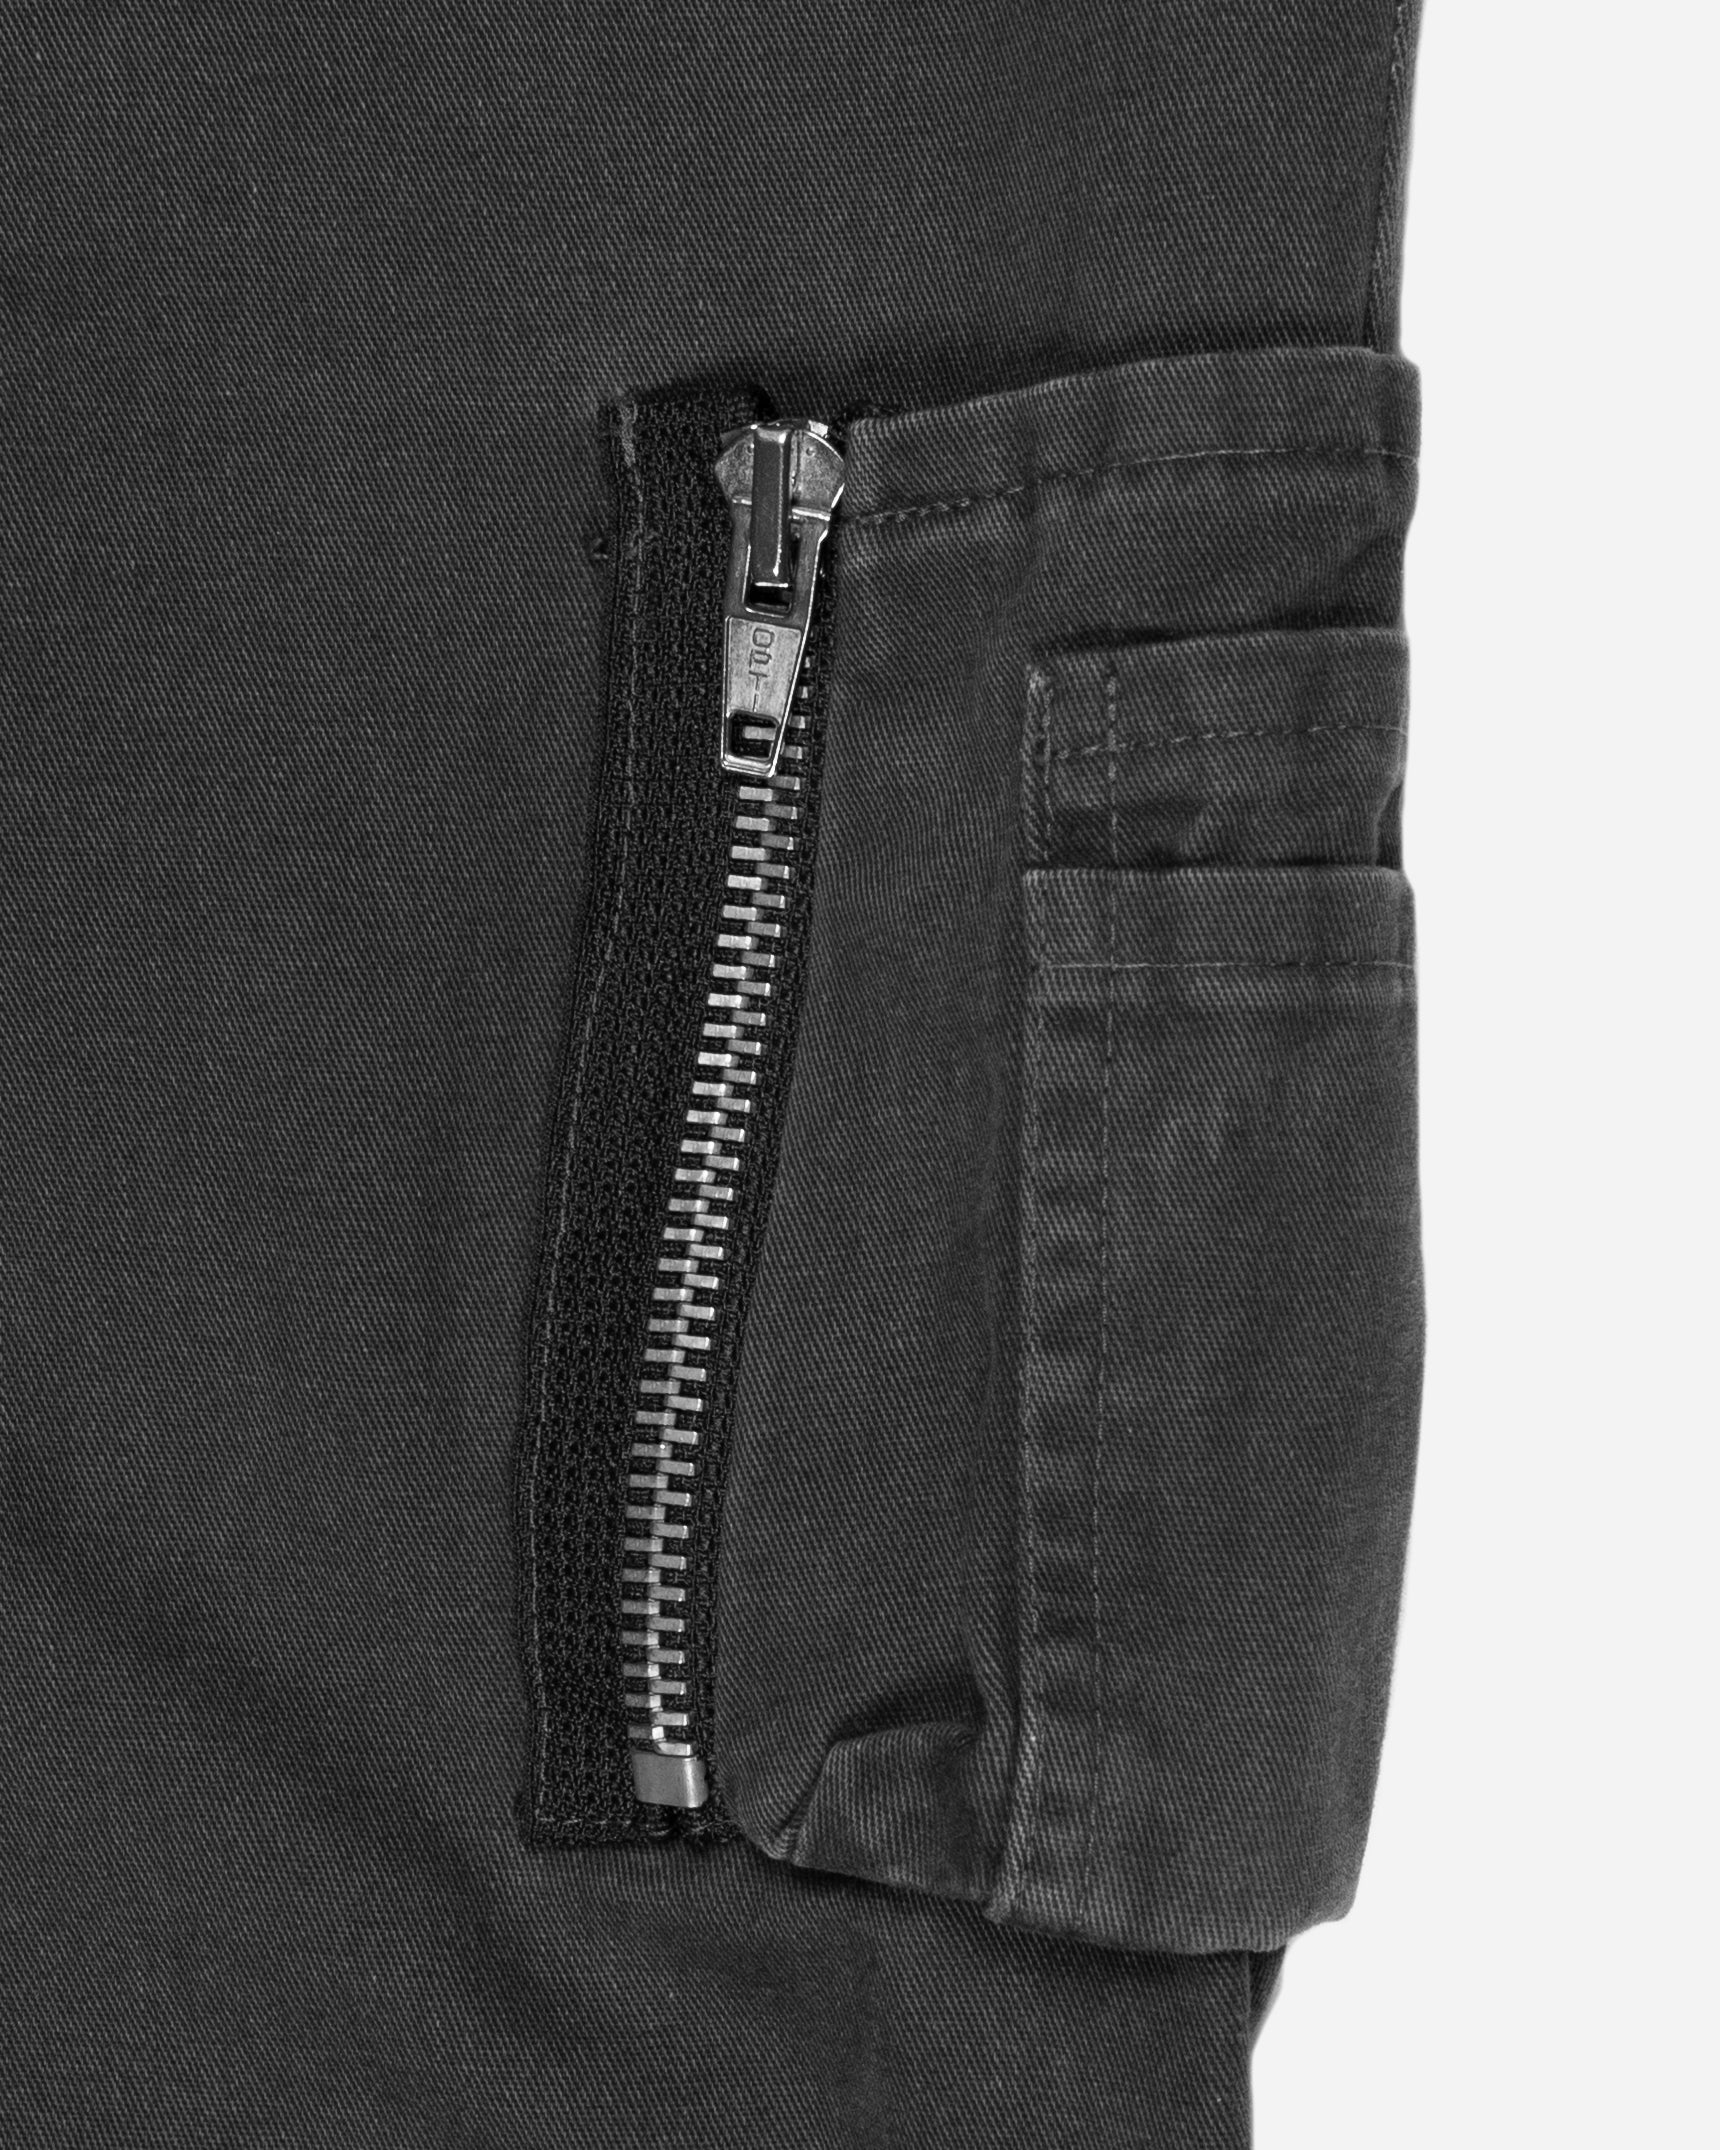 RAF SIMONS 21AW pocket hole trousers